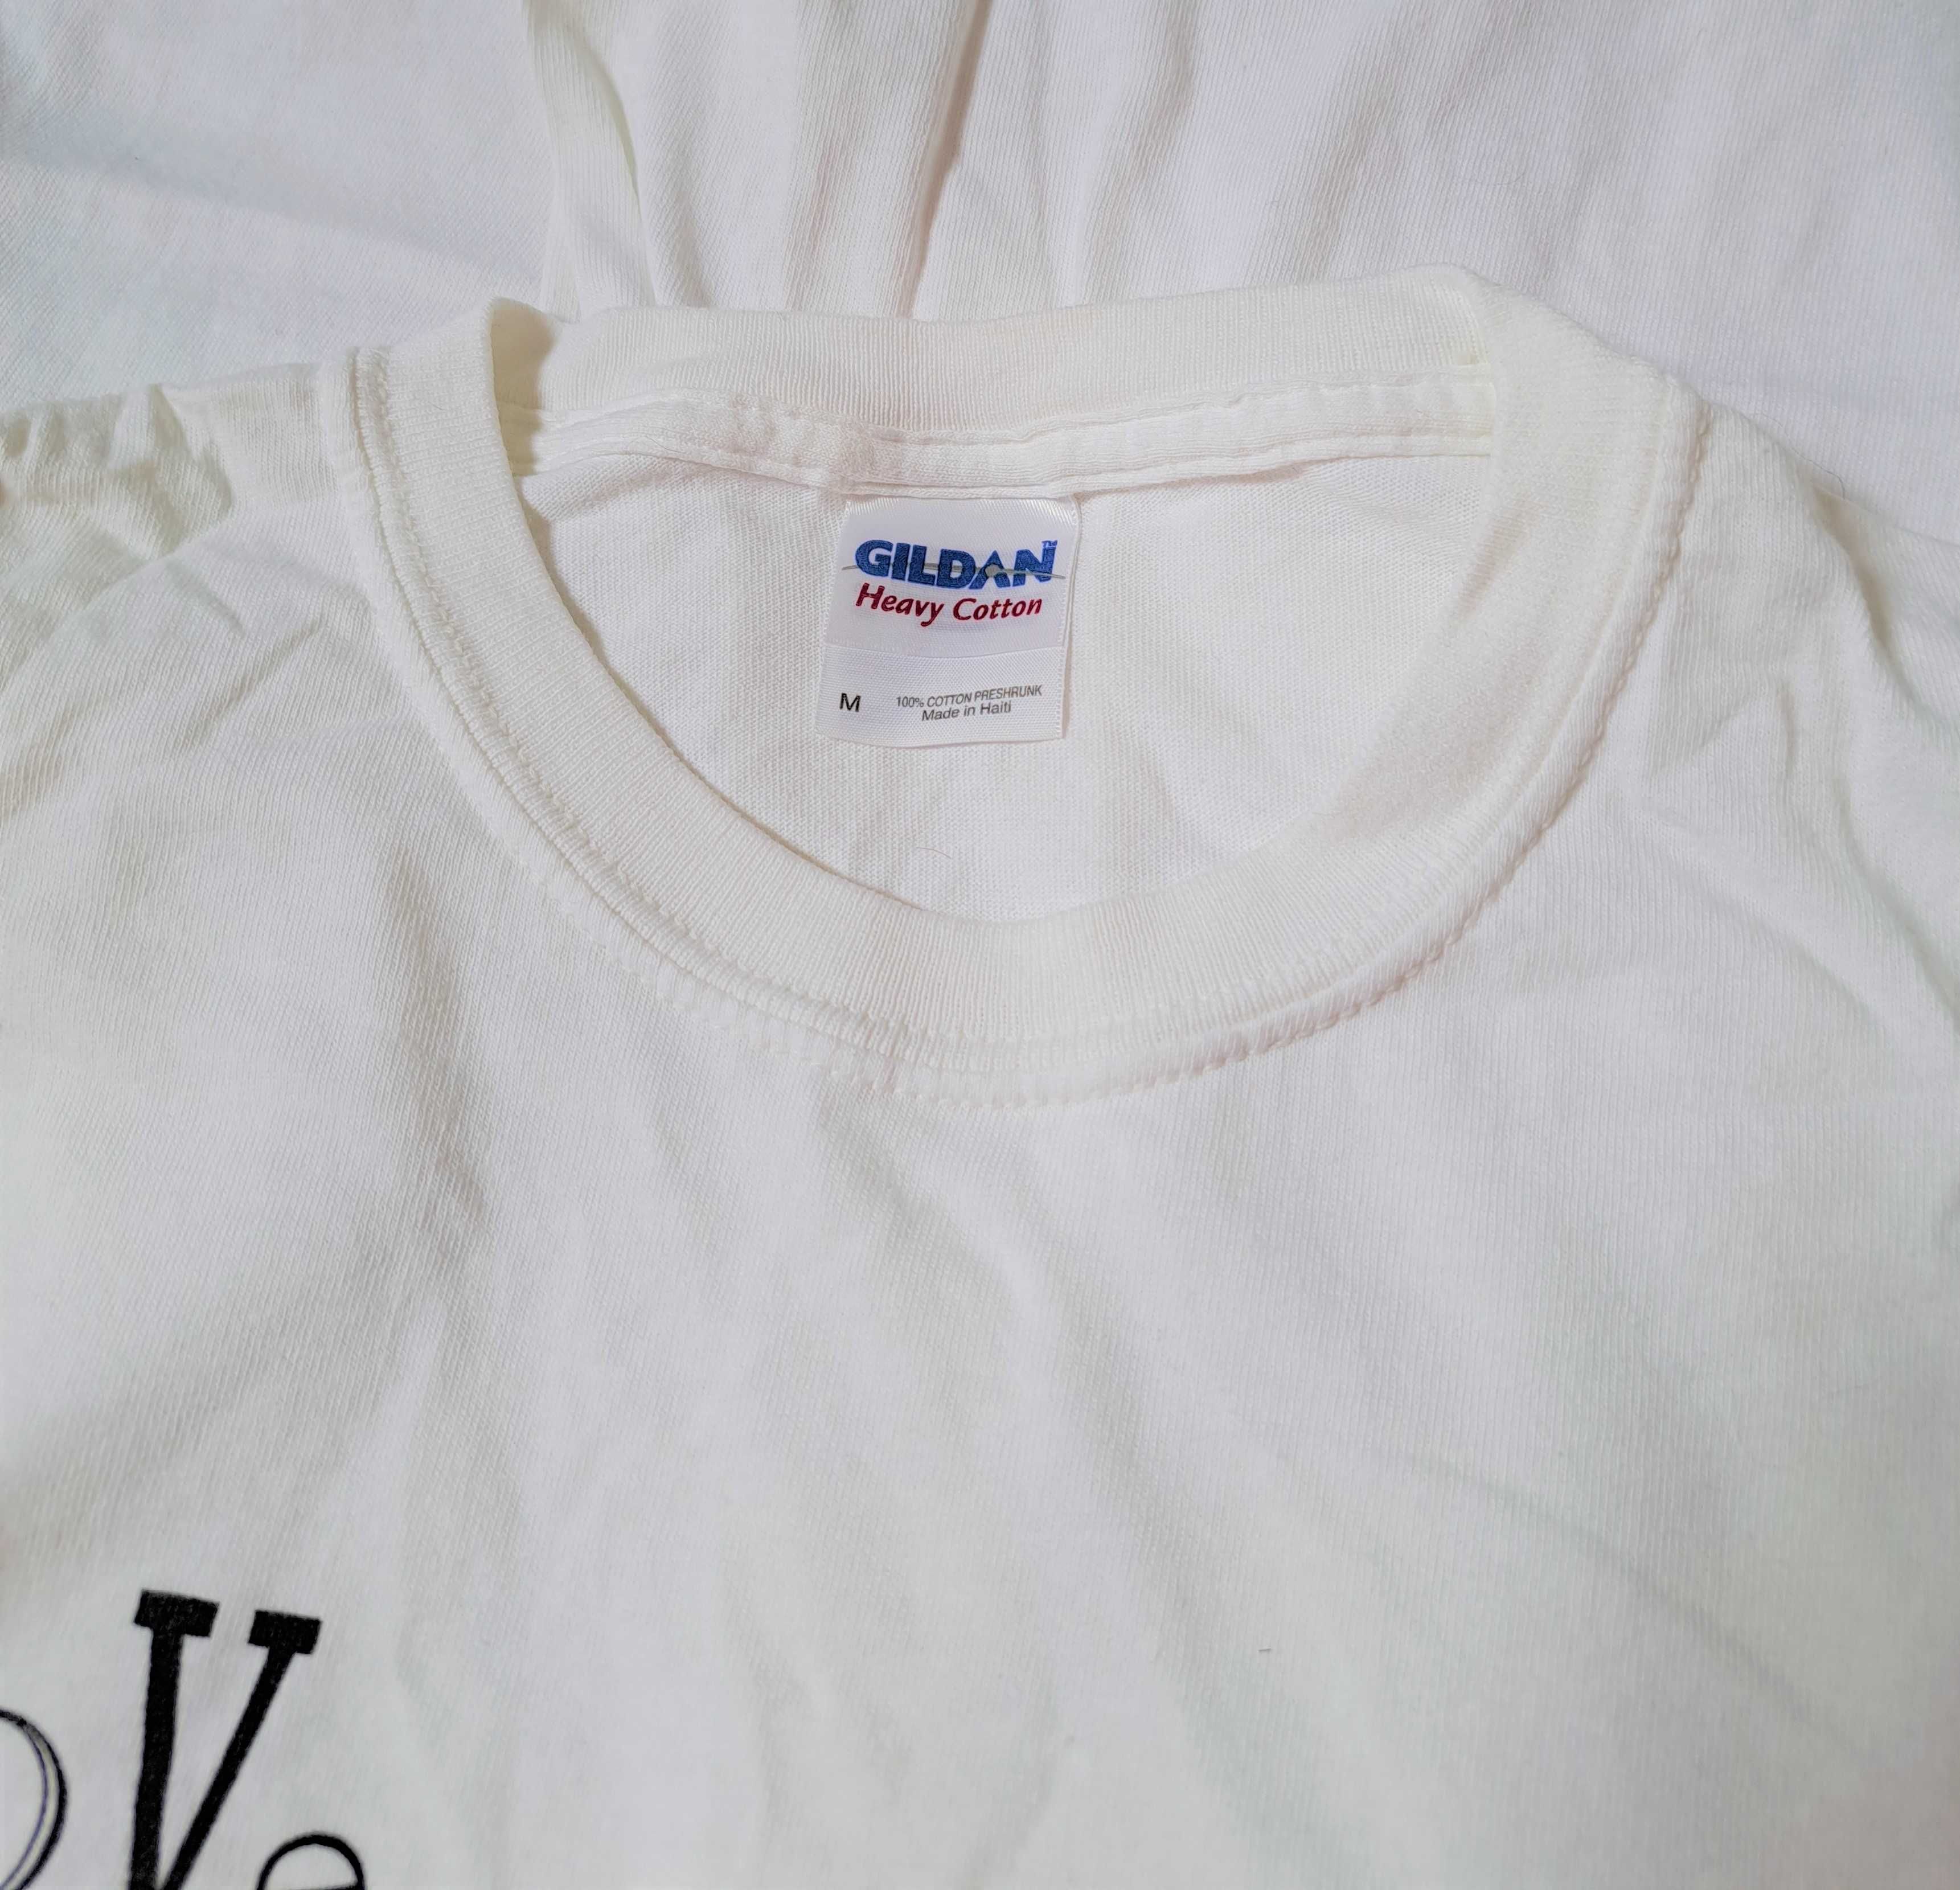 Damski biały tshirt firmy Gildan z nadrukiem Lesbian , rozmiar M